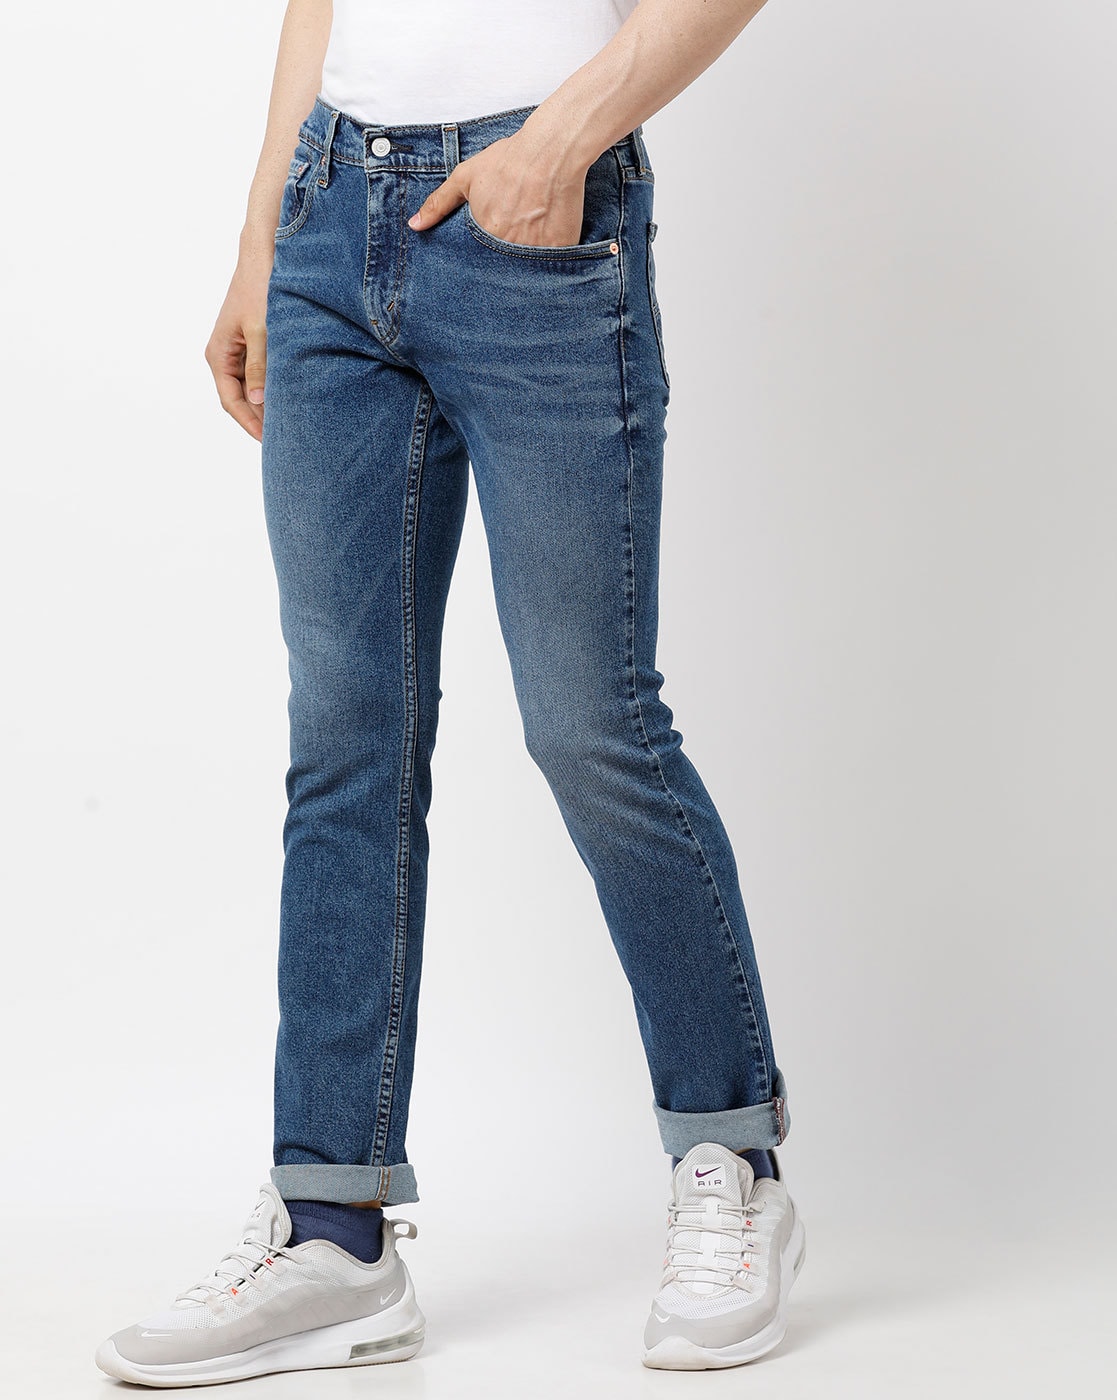 levis jeans 65504